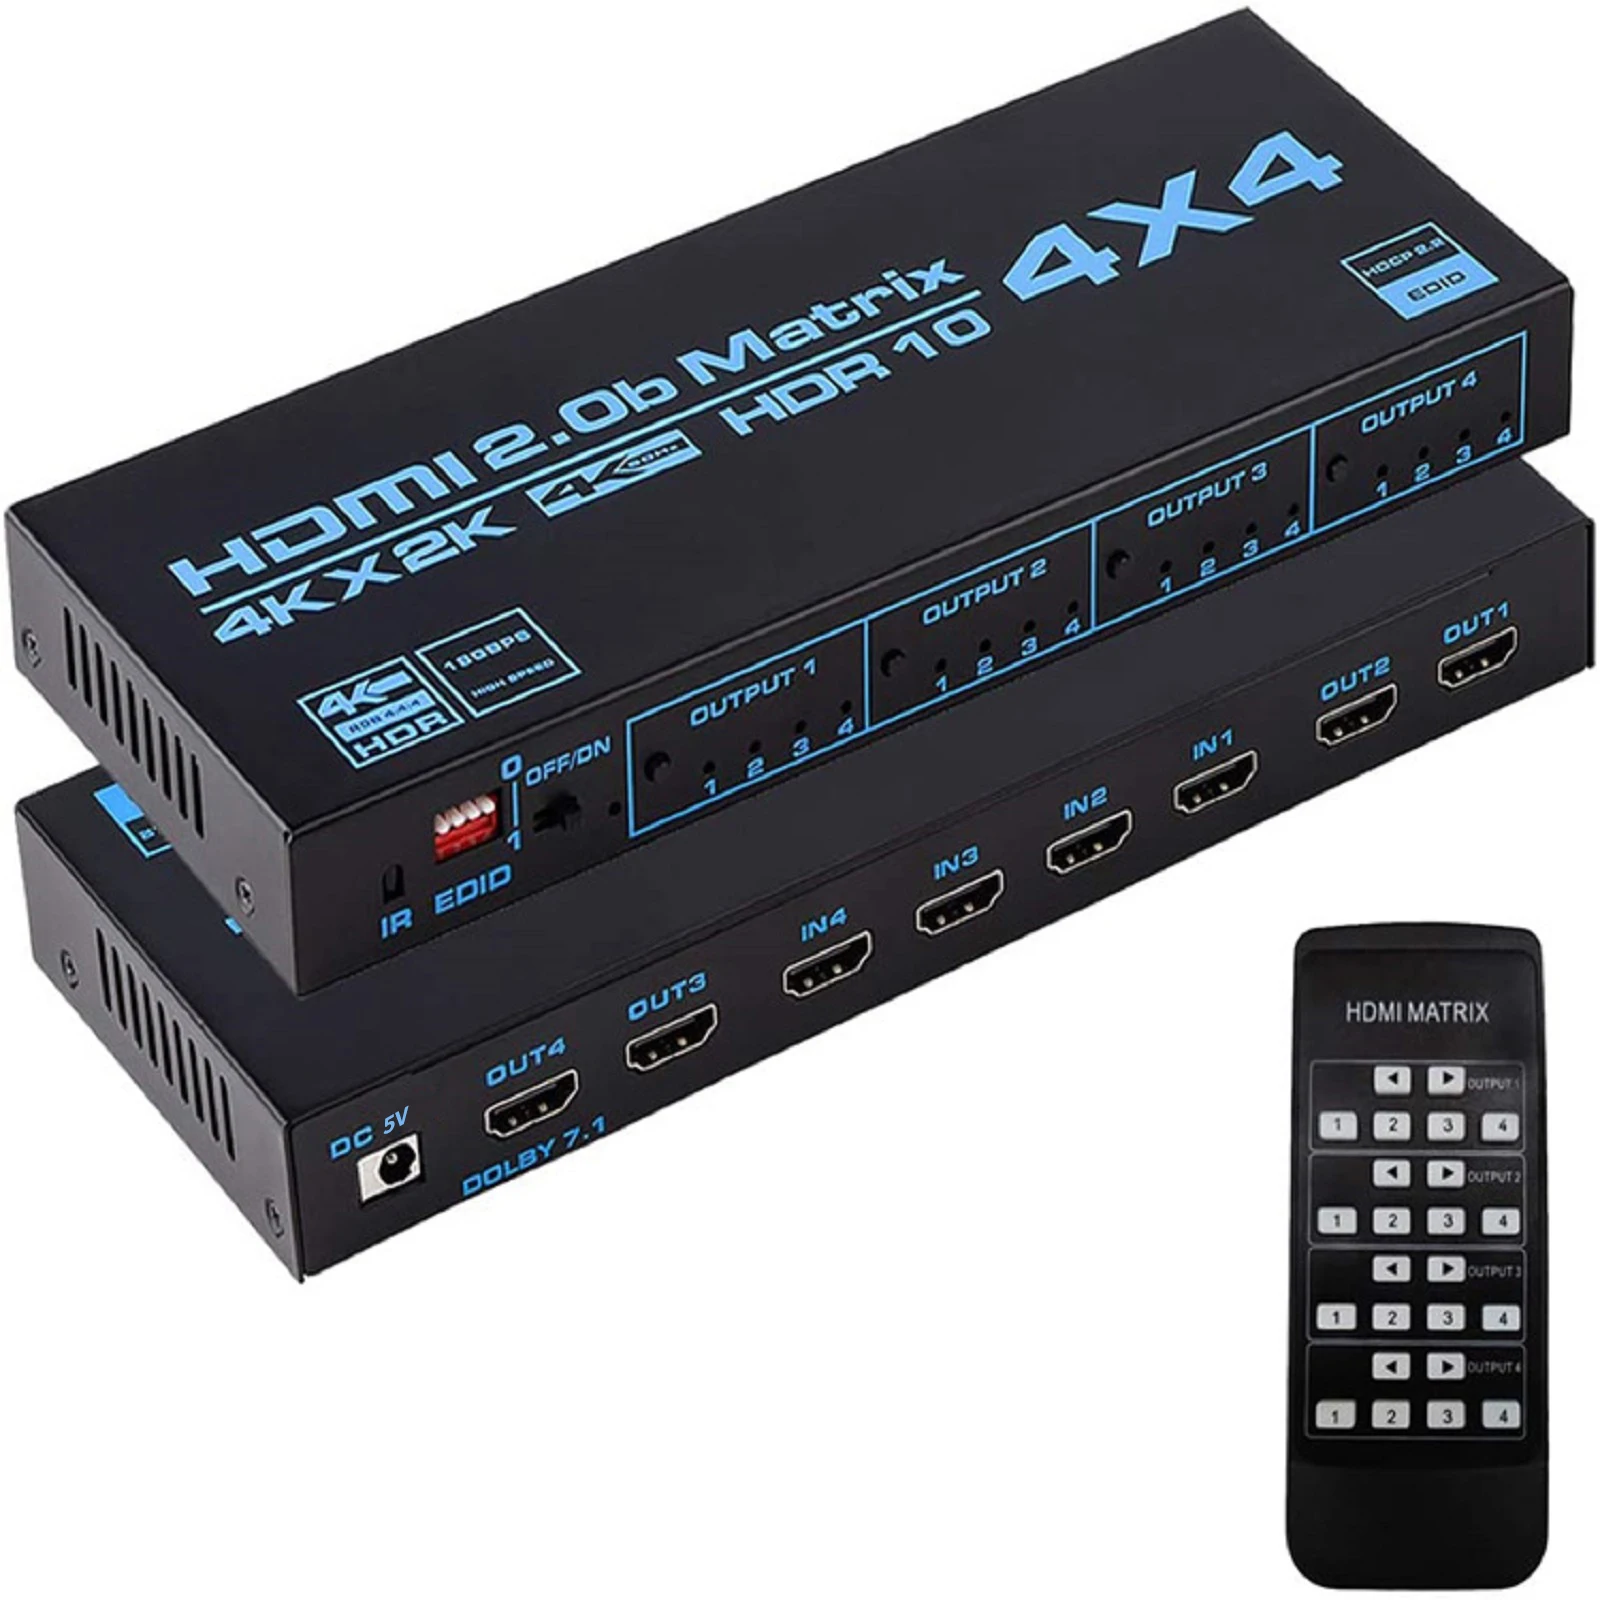 

Матричный Коммутатор HDMI 2,0, 4x4 4K * 2K @ 60 Гц HDR 10 HDCP 2,2, сплиттер, 4 в 4 выхода, аудио-видео преобразователь EDID, ИК-пульт дистанционного управления